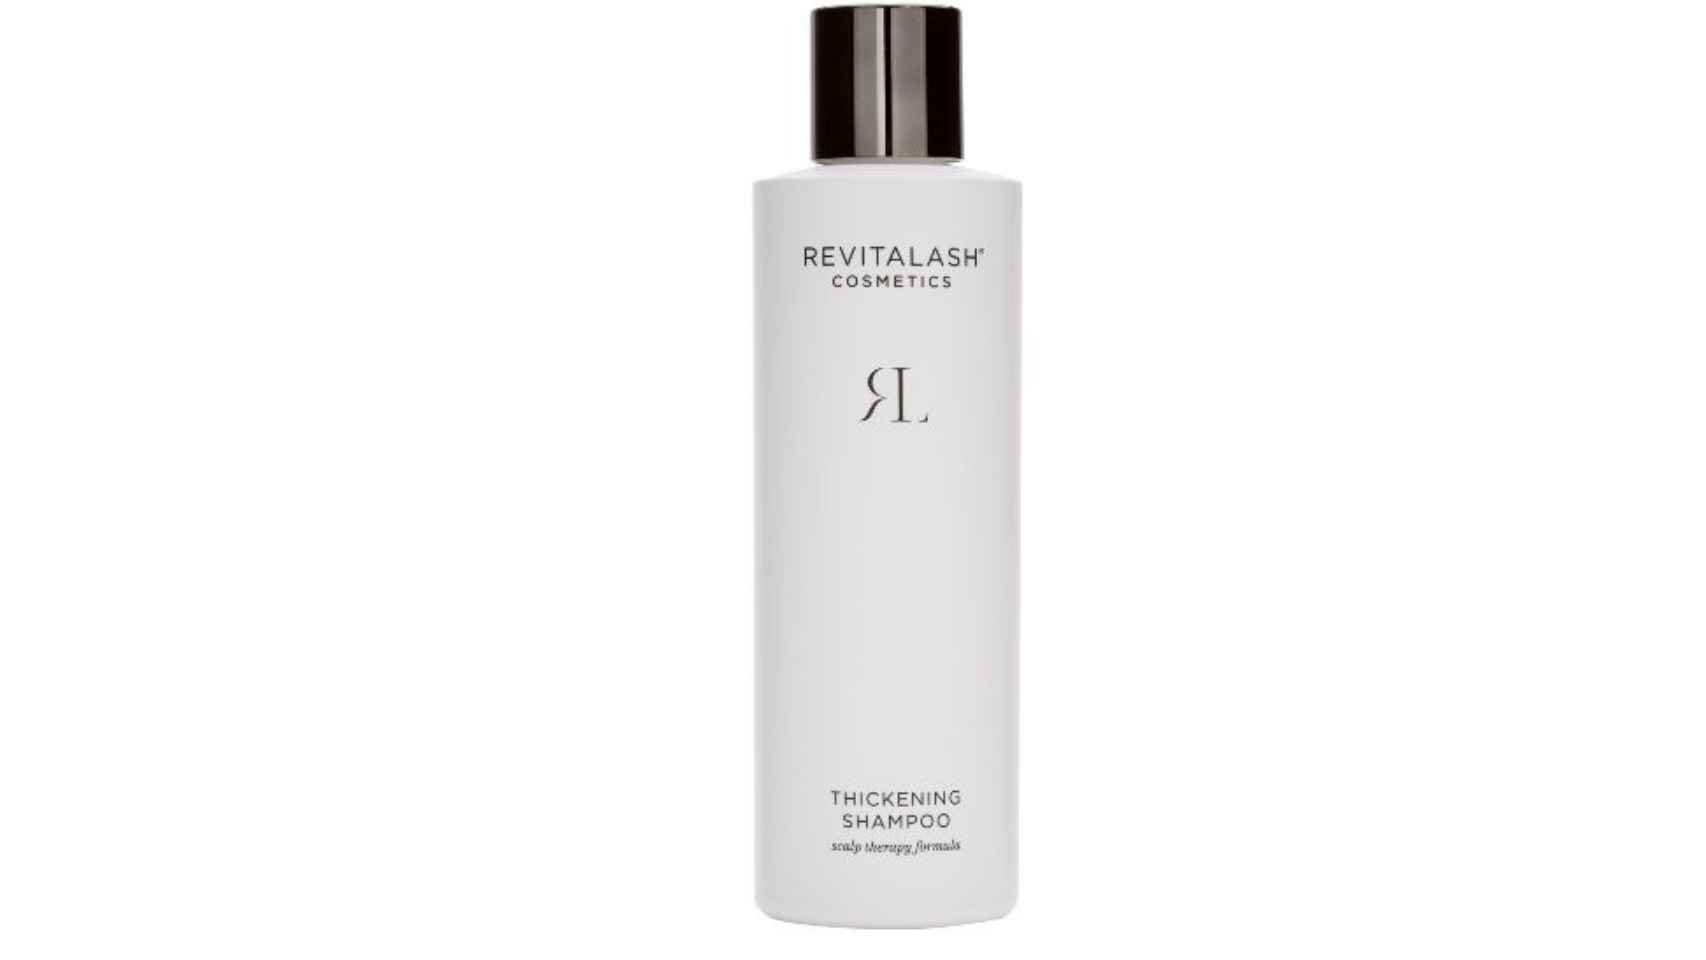 RevitaLash Thickening Shampoo exfolia el cuero cabelludo con ácido salicílico.